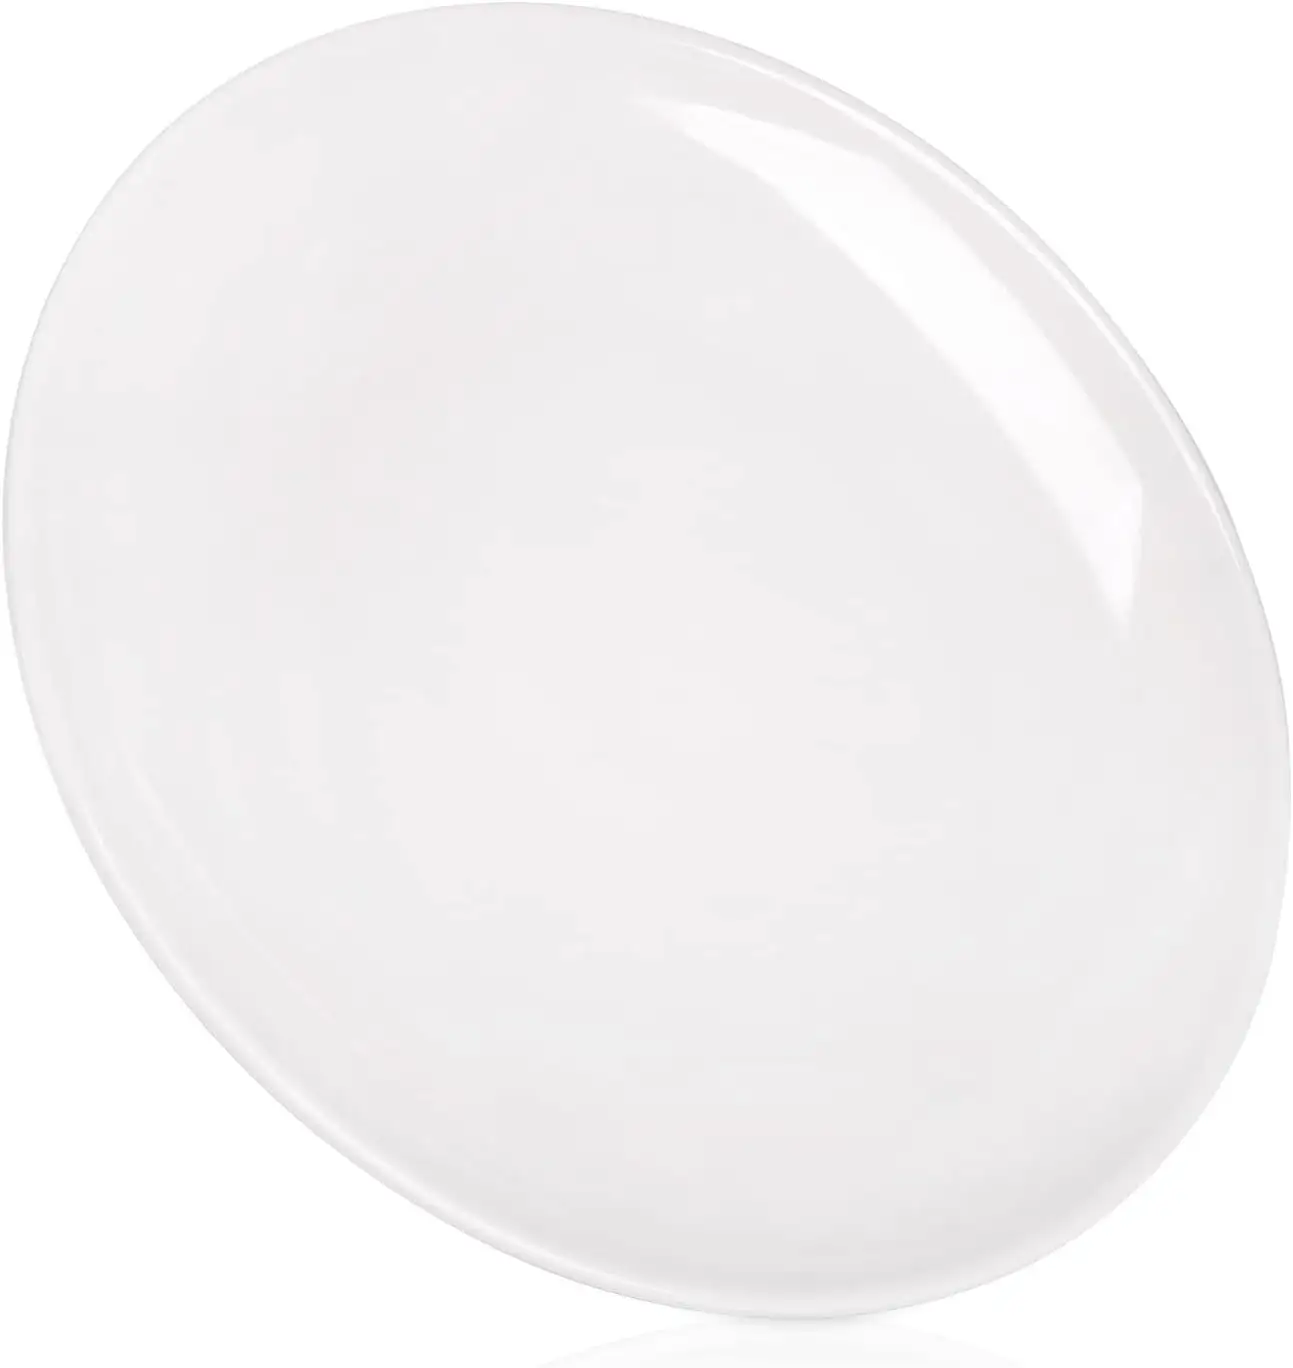 Solid white color Custom Melamine Dinnerware Set Wholesale plain round Melamine Plates for restaurant